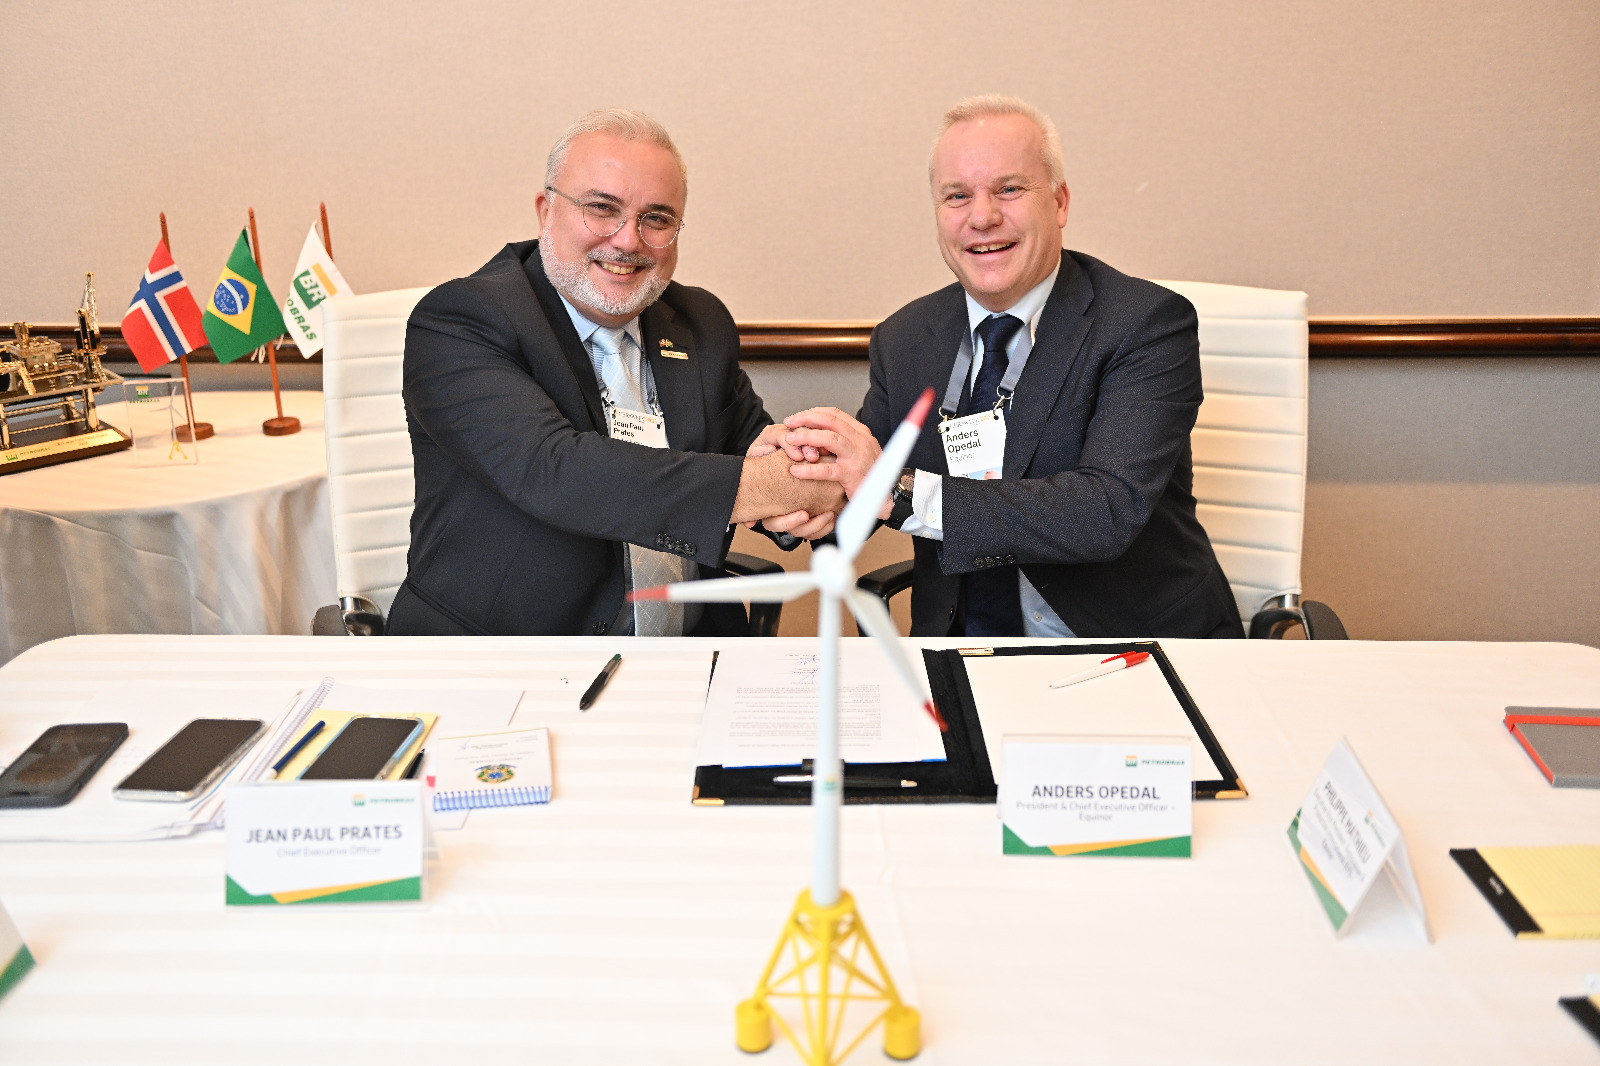 Presidentes da Petrobras, Jean Paul Prates, e da Equinor, Anders Opedal, assinaram carta de intenções para avaliar sete projetos de eólica offshore no Brasil